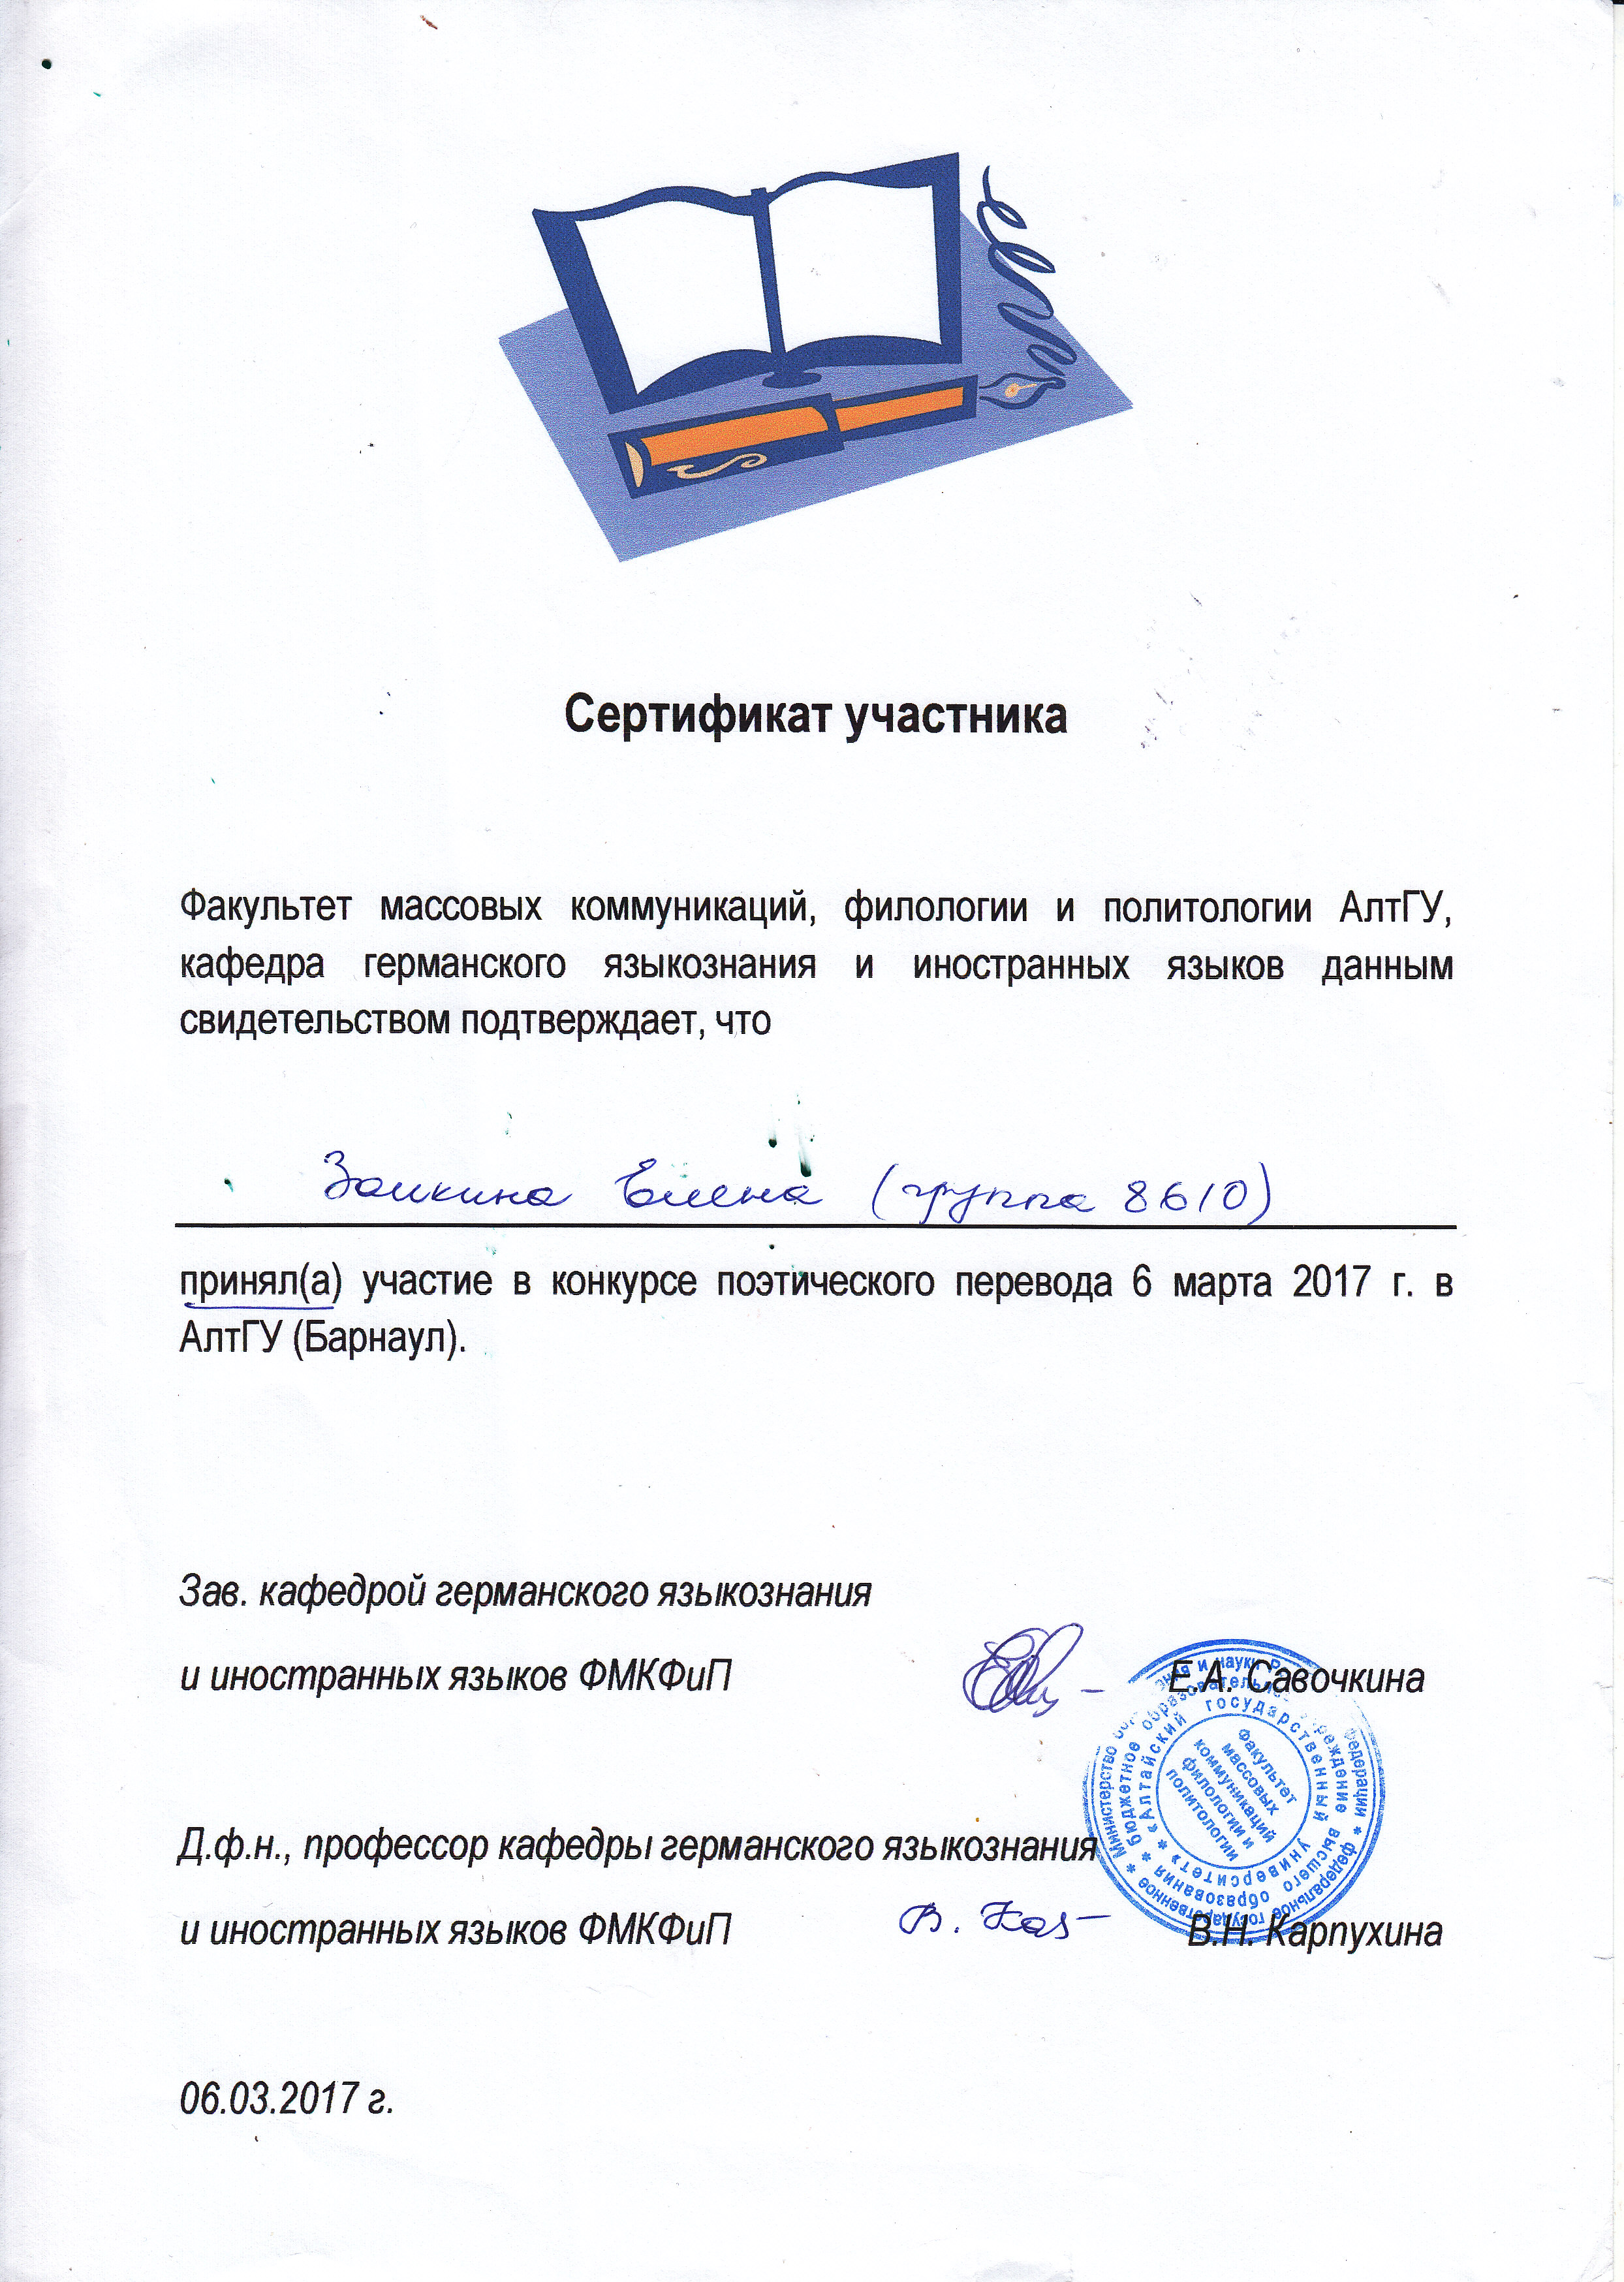 Сертификат участника конкурса поэтического перевода